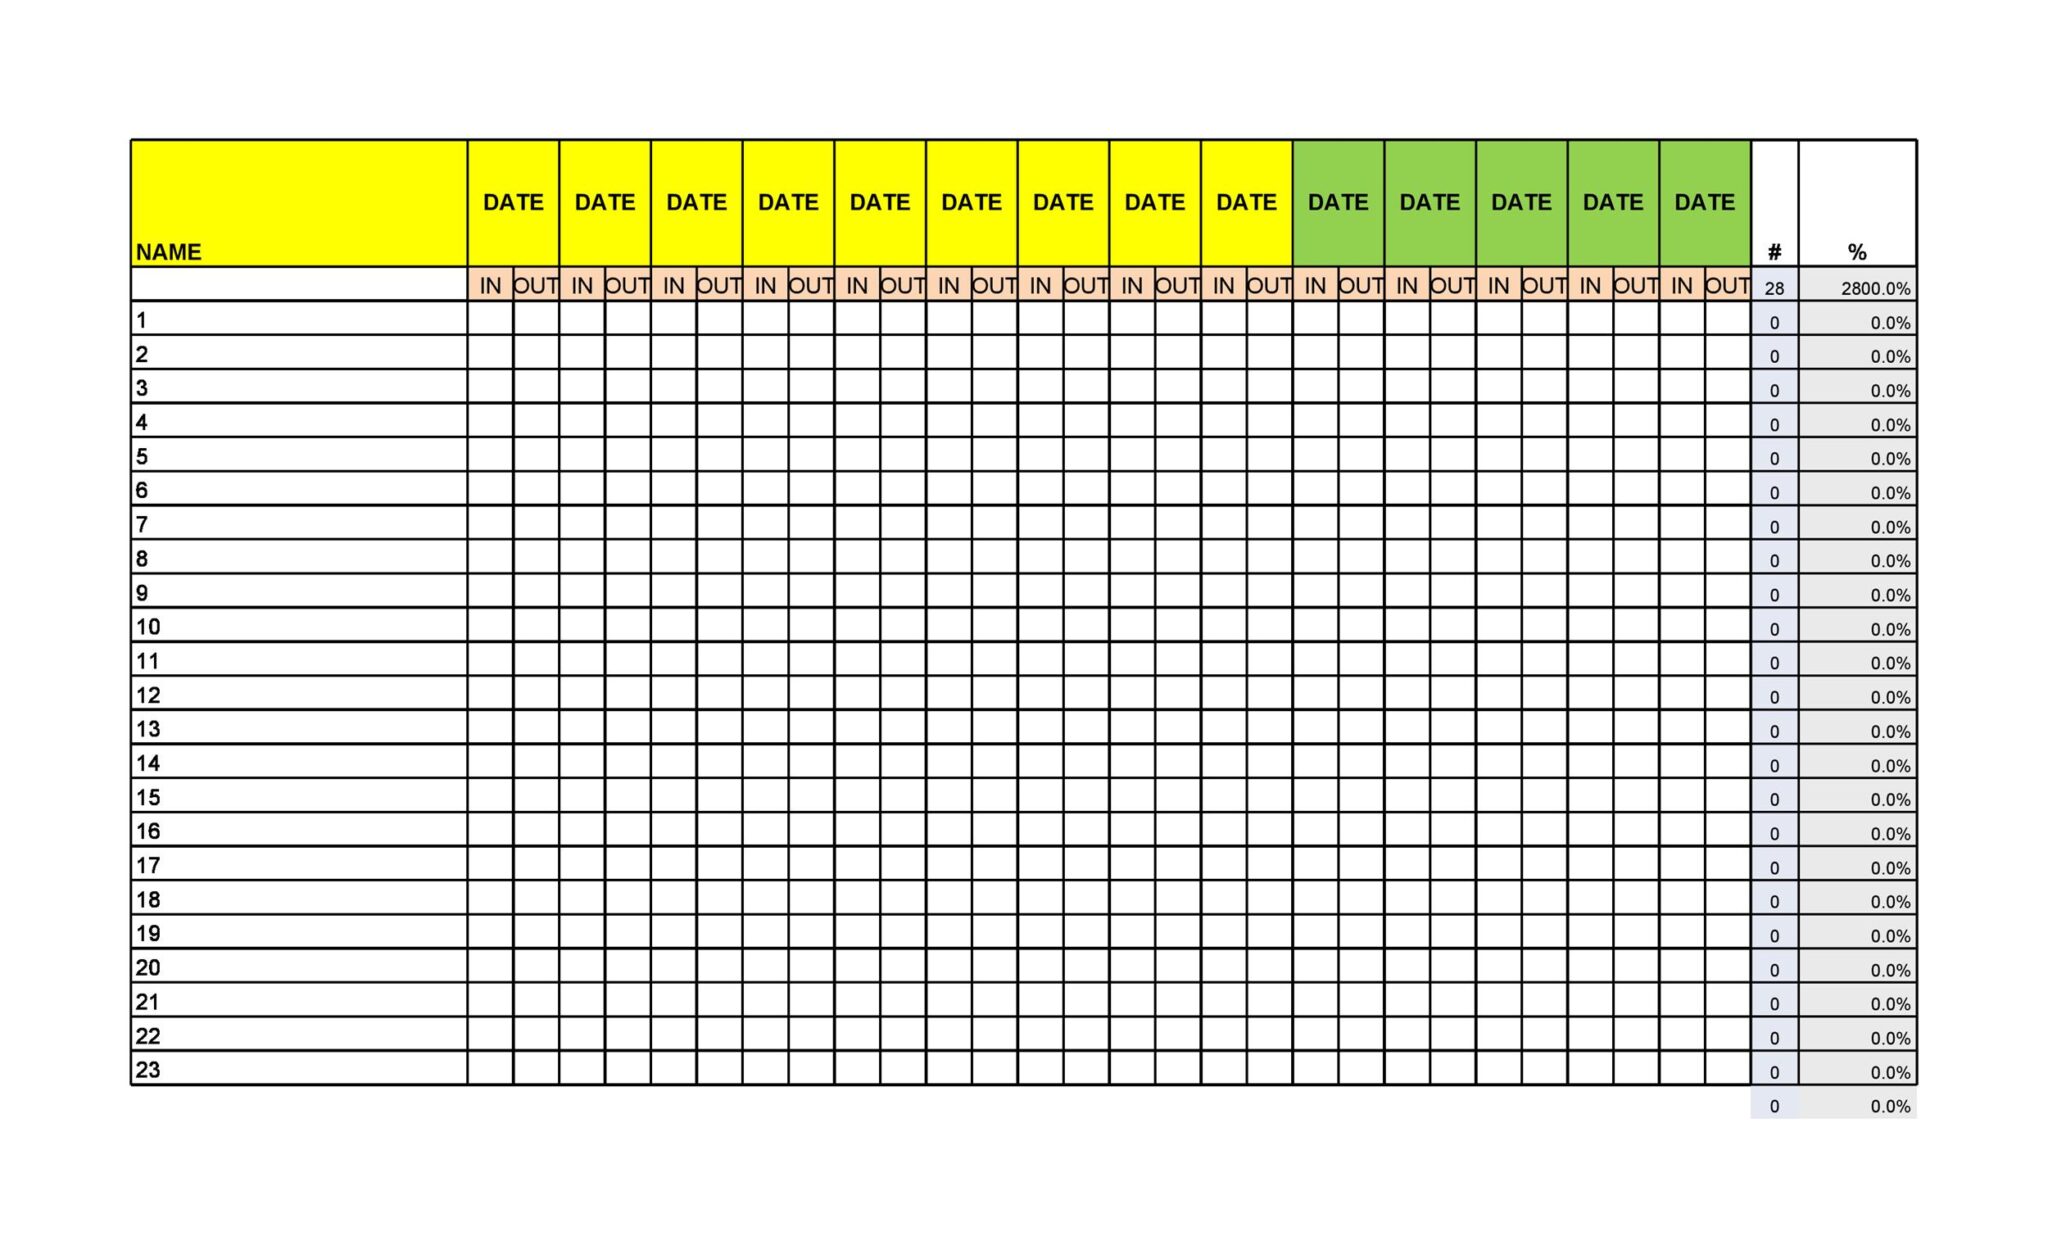 Attendance Sheet Excel Template